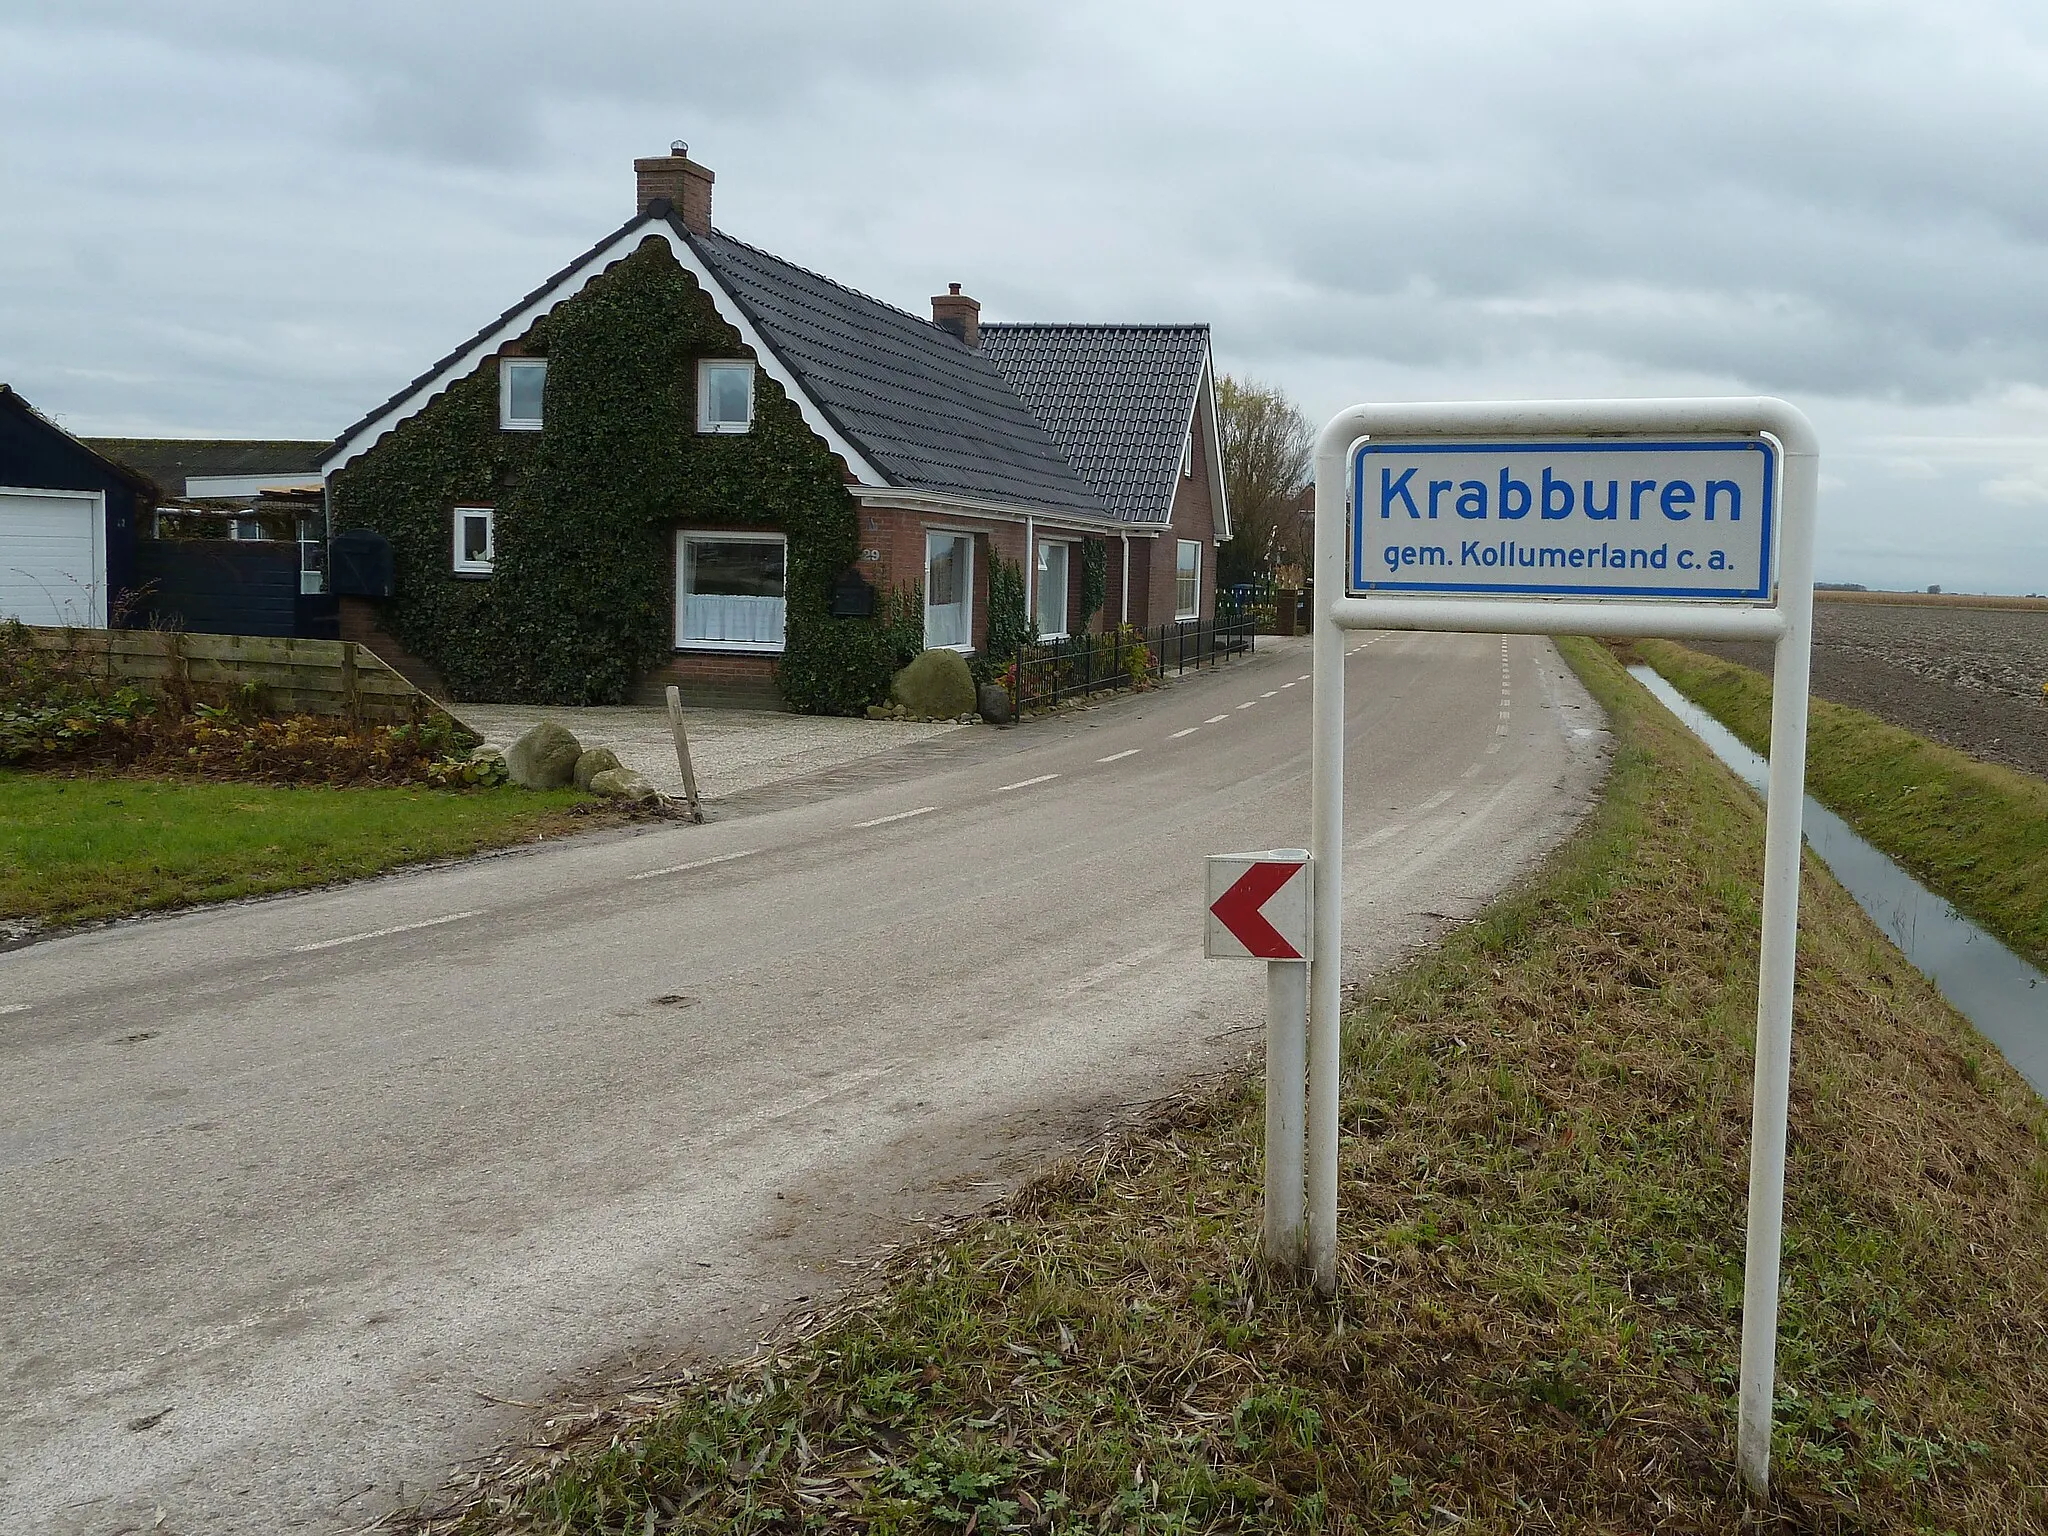 Photo showing: Naambordje van het buurtschap Krabburen in de Friese gemeente Kollumerland en Nieuwkruisland, gezien vanaf de richting Munnekezijl.